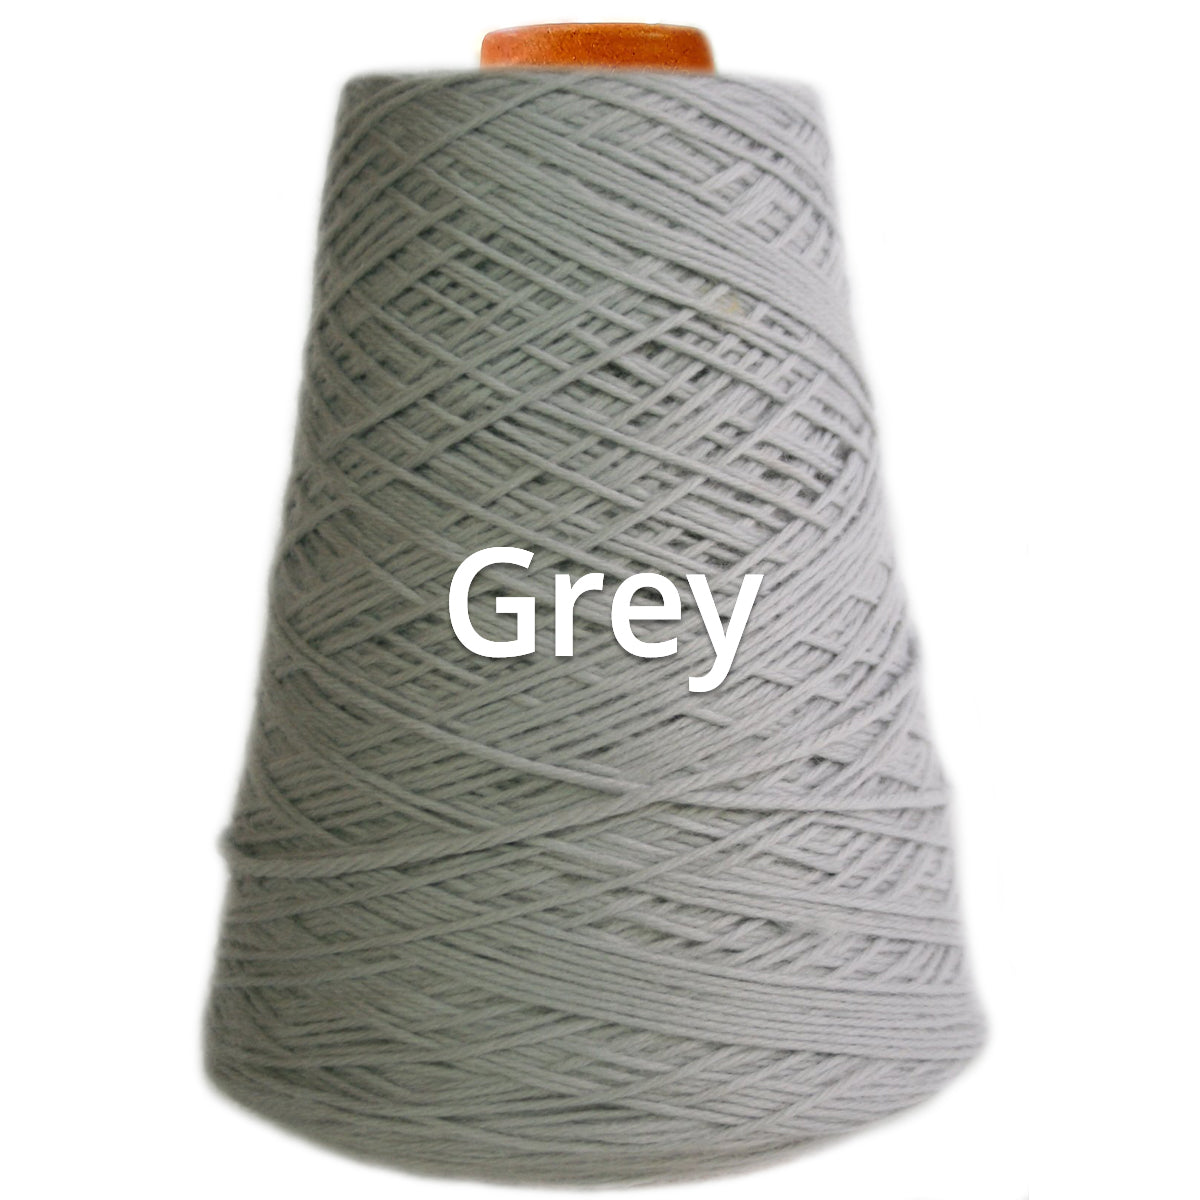 Grey - Nundle Collection 12 ply Chaffey Yarn 400g Cone